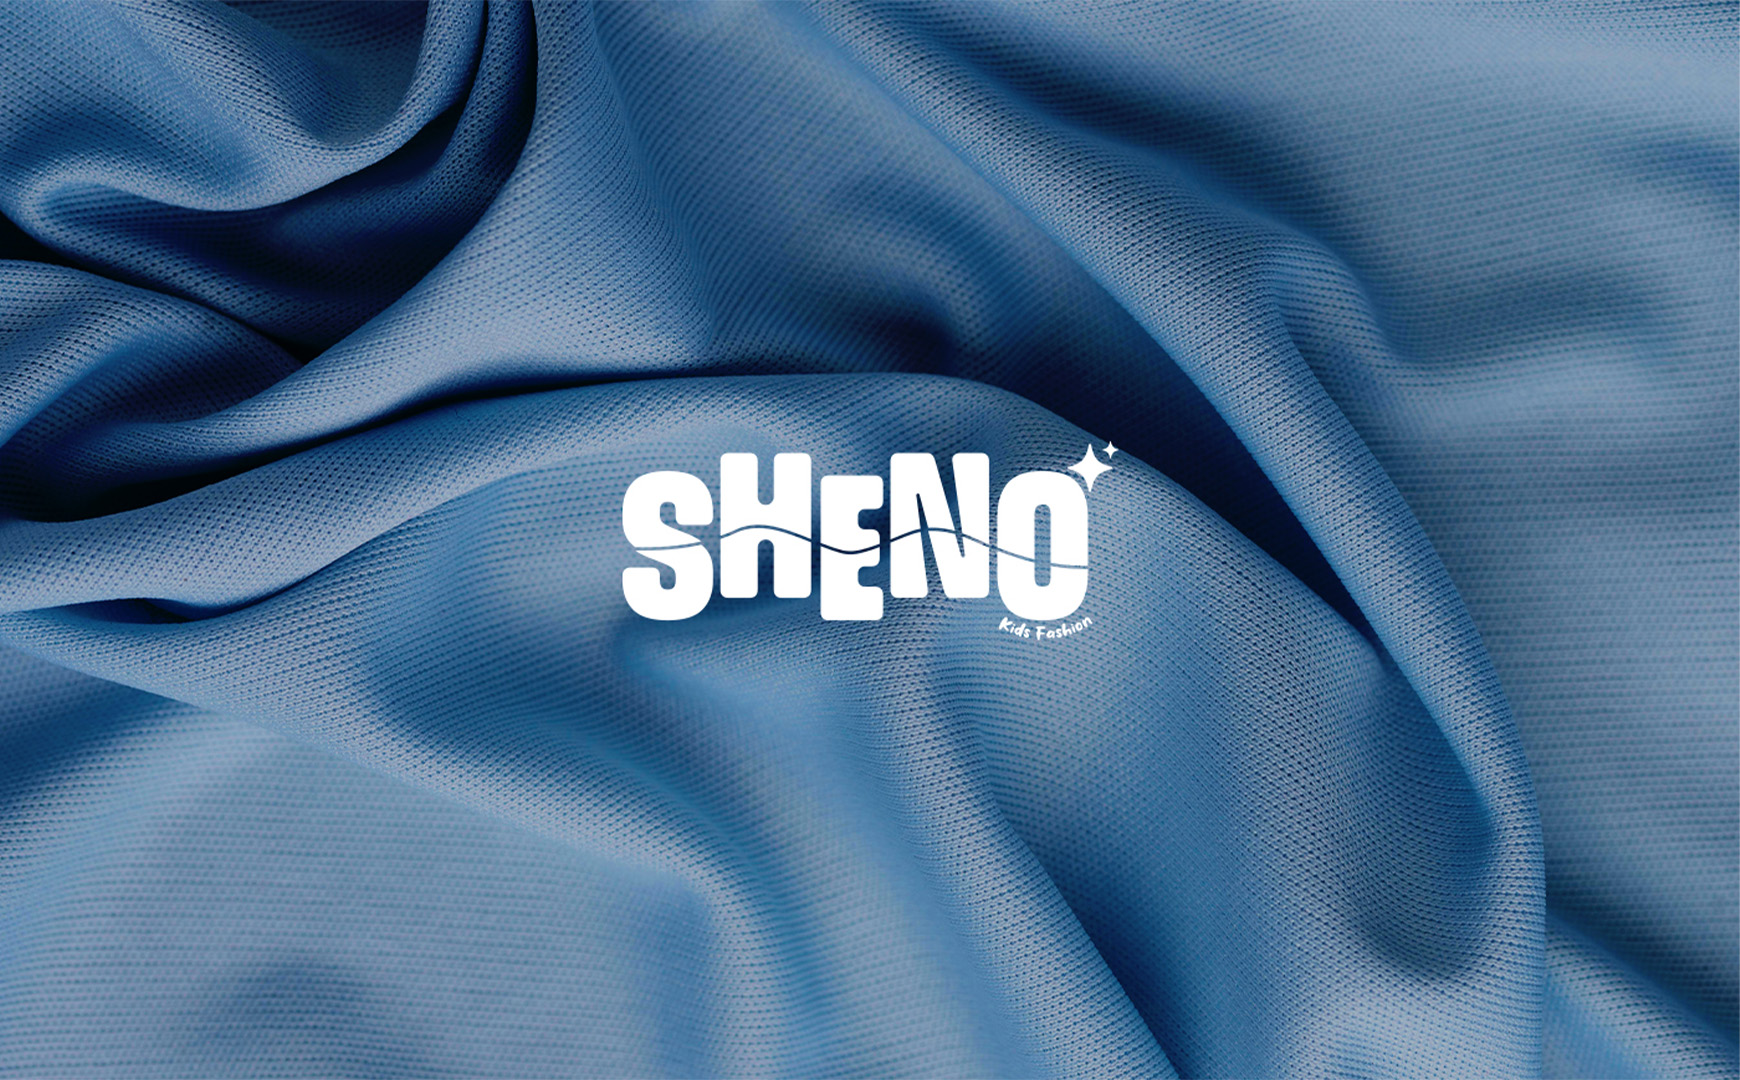 Sheno Brand Identity